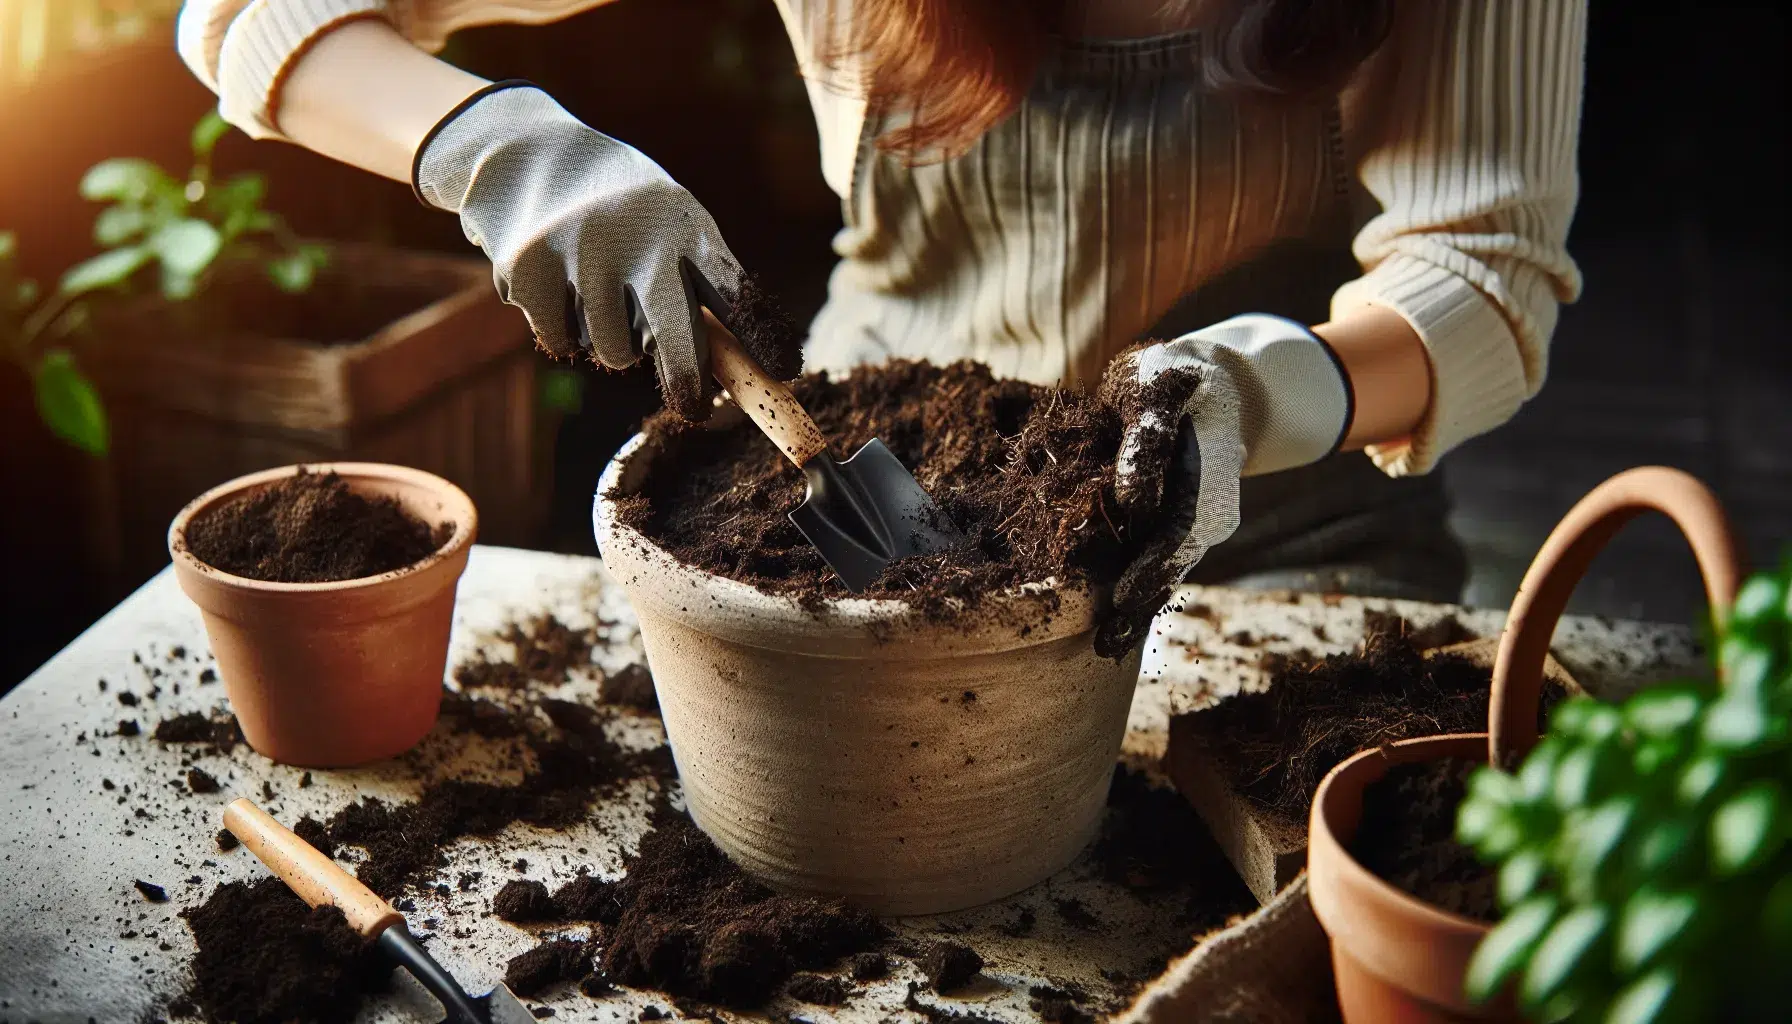 Imagen de una persona mezclando abono orgánico con tierra en una maceta, ilustrando el proceso de mejora de la tierra para sembrar en macetas y huertos.